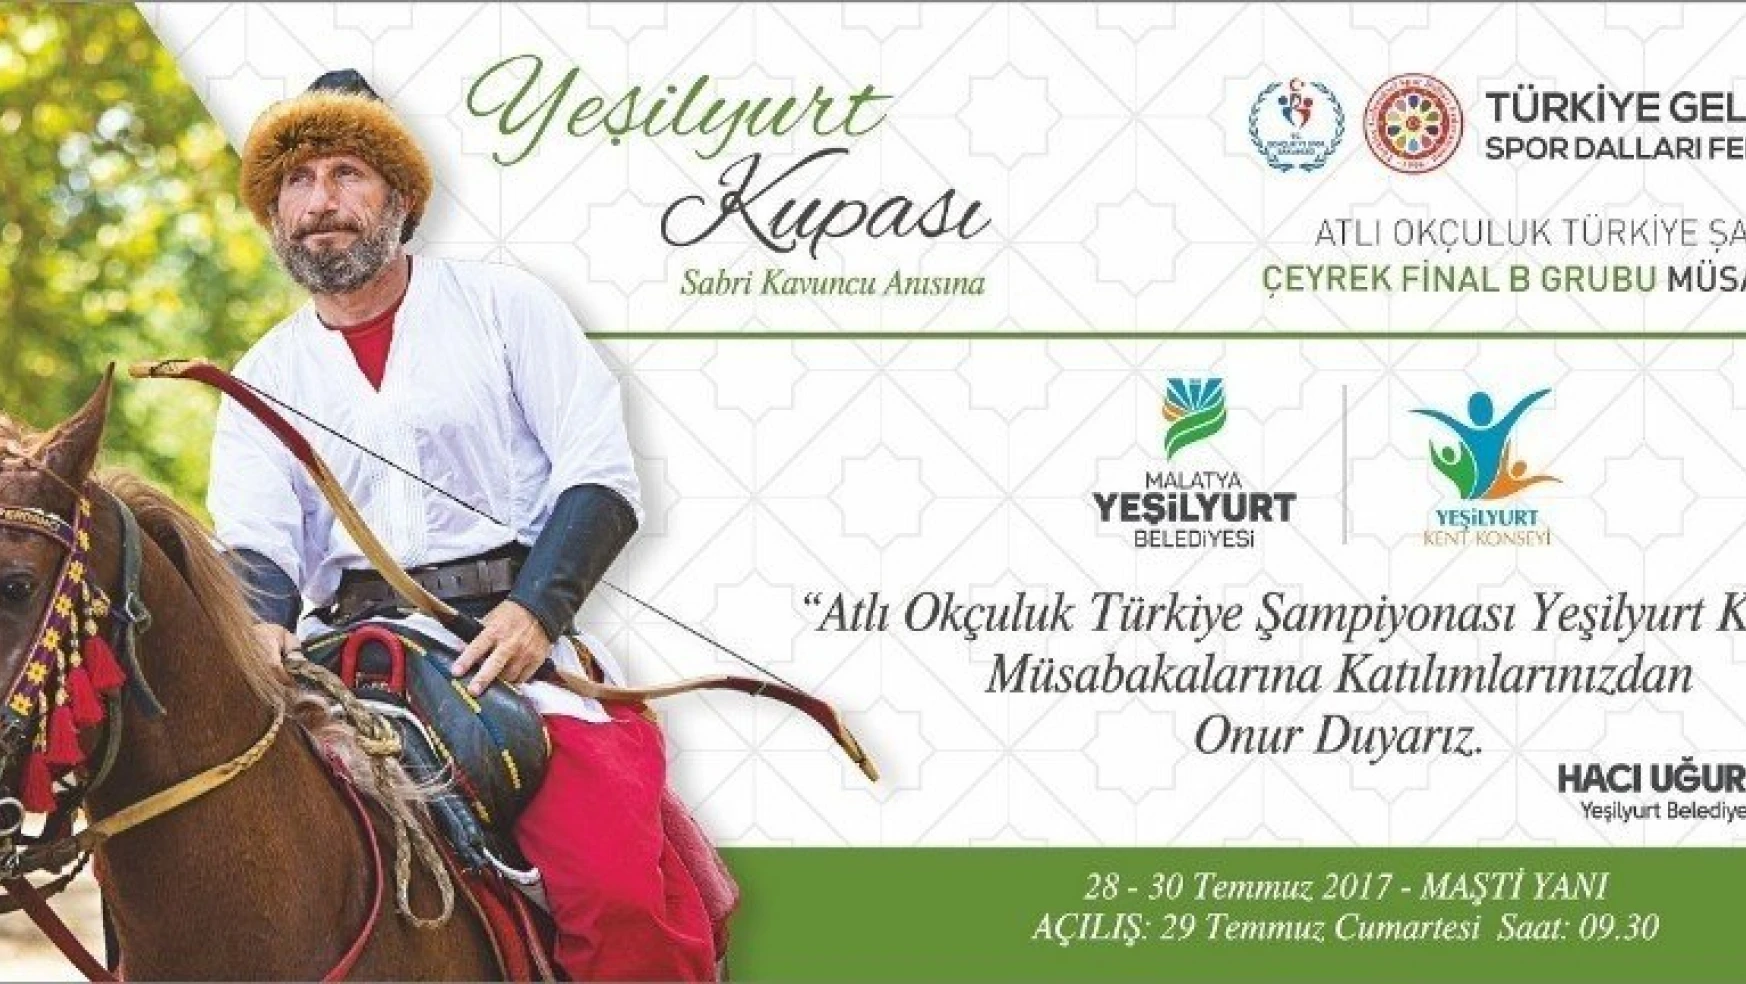 Atlı Okçuluk Türkiye Şampiyonası Çeyrek Final müsabakaları 28-30 Temmuz'da yapılacak
